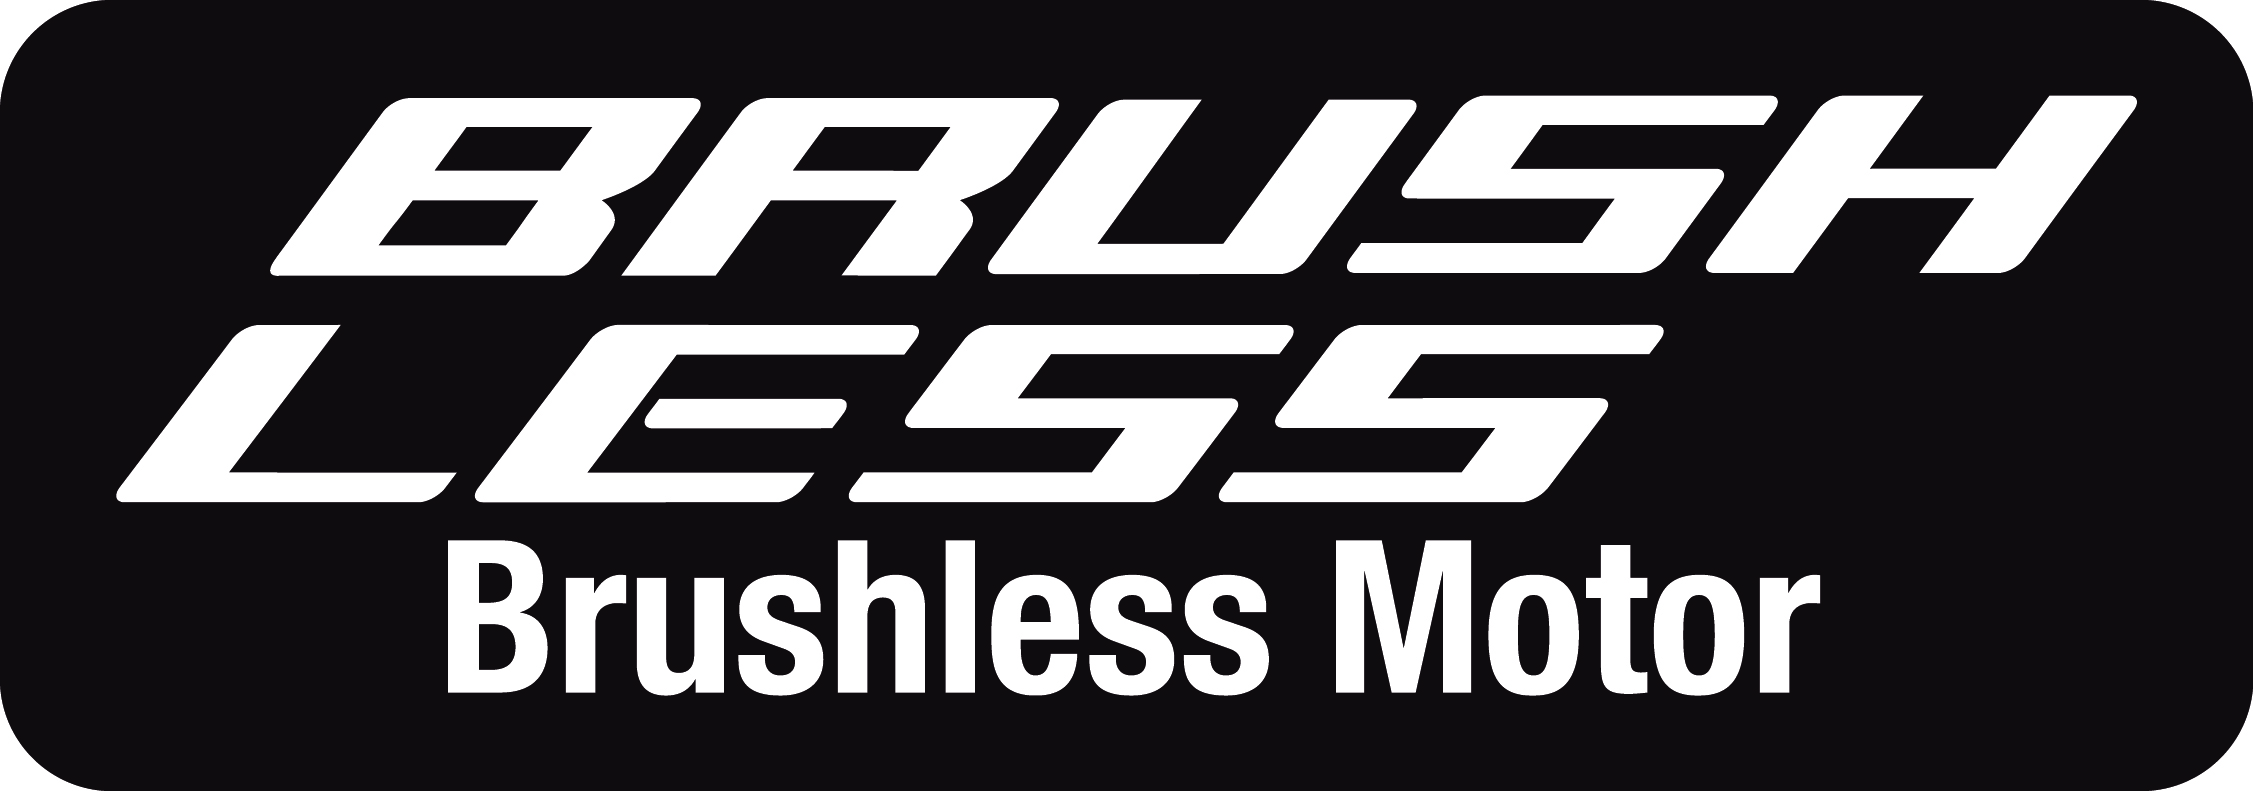 Brushless